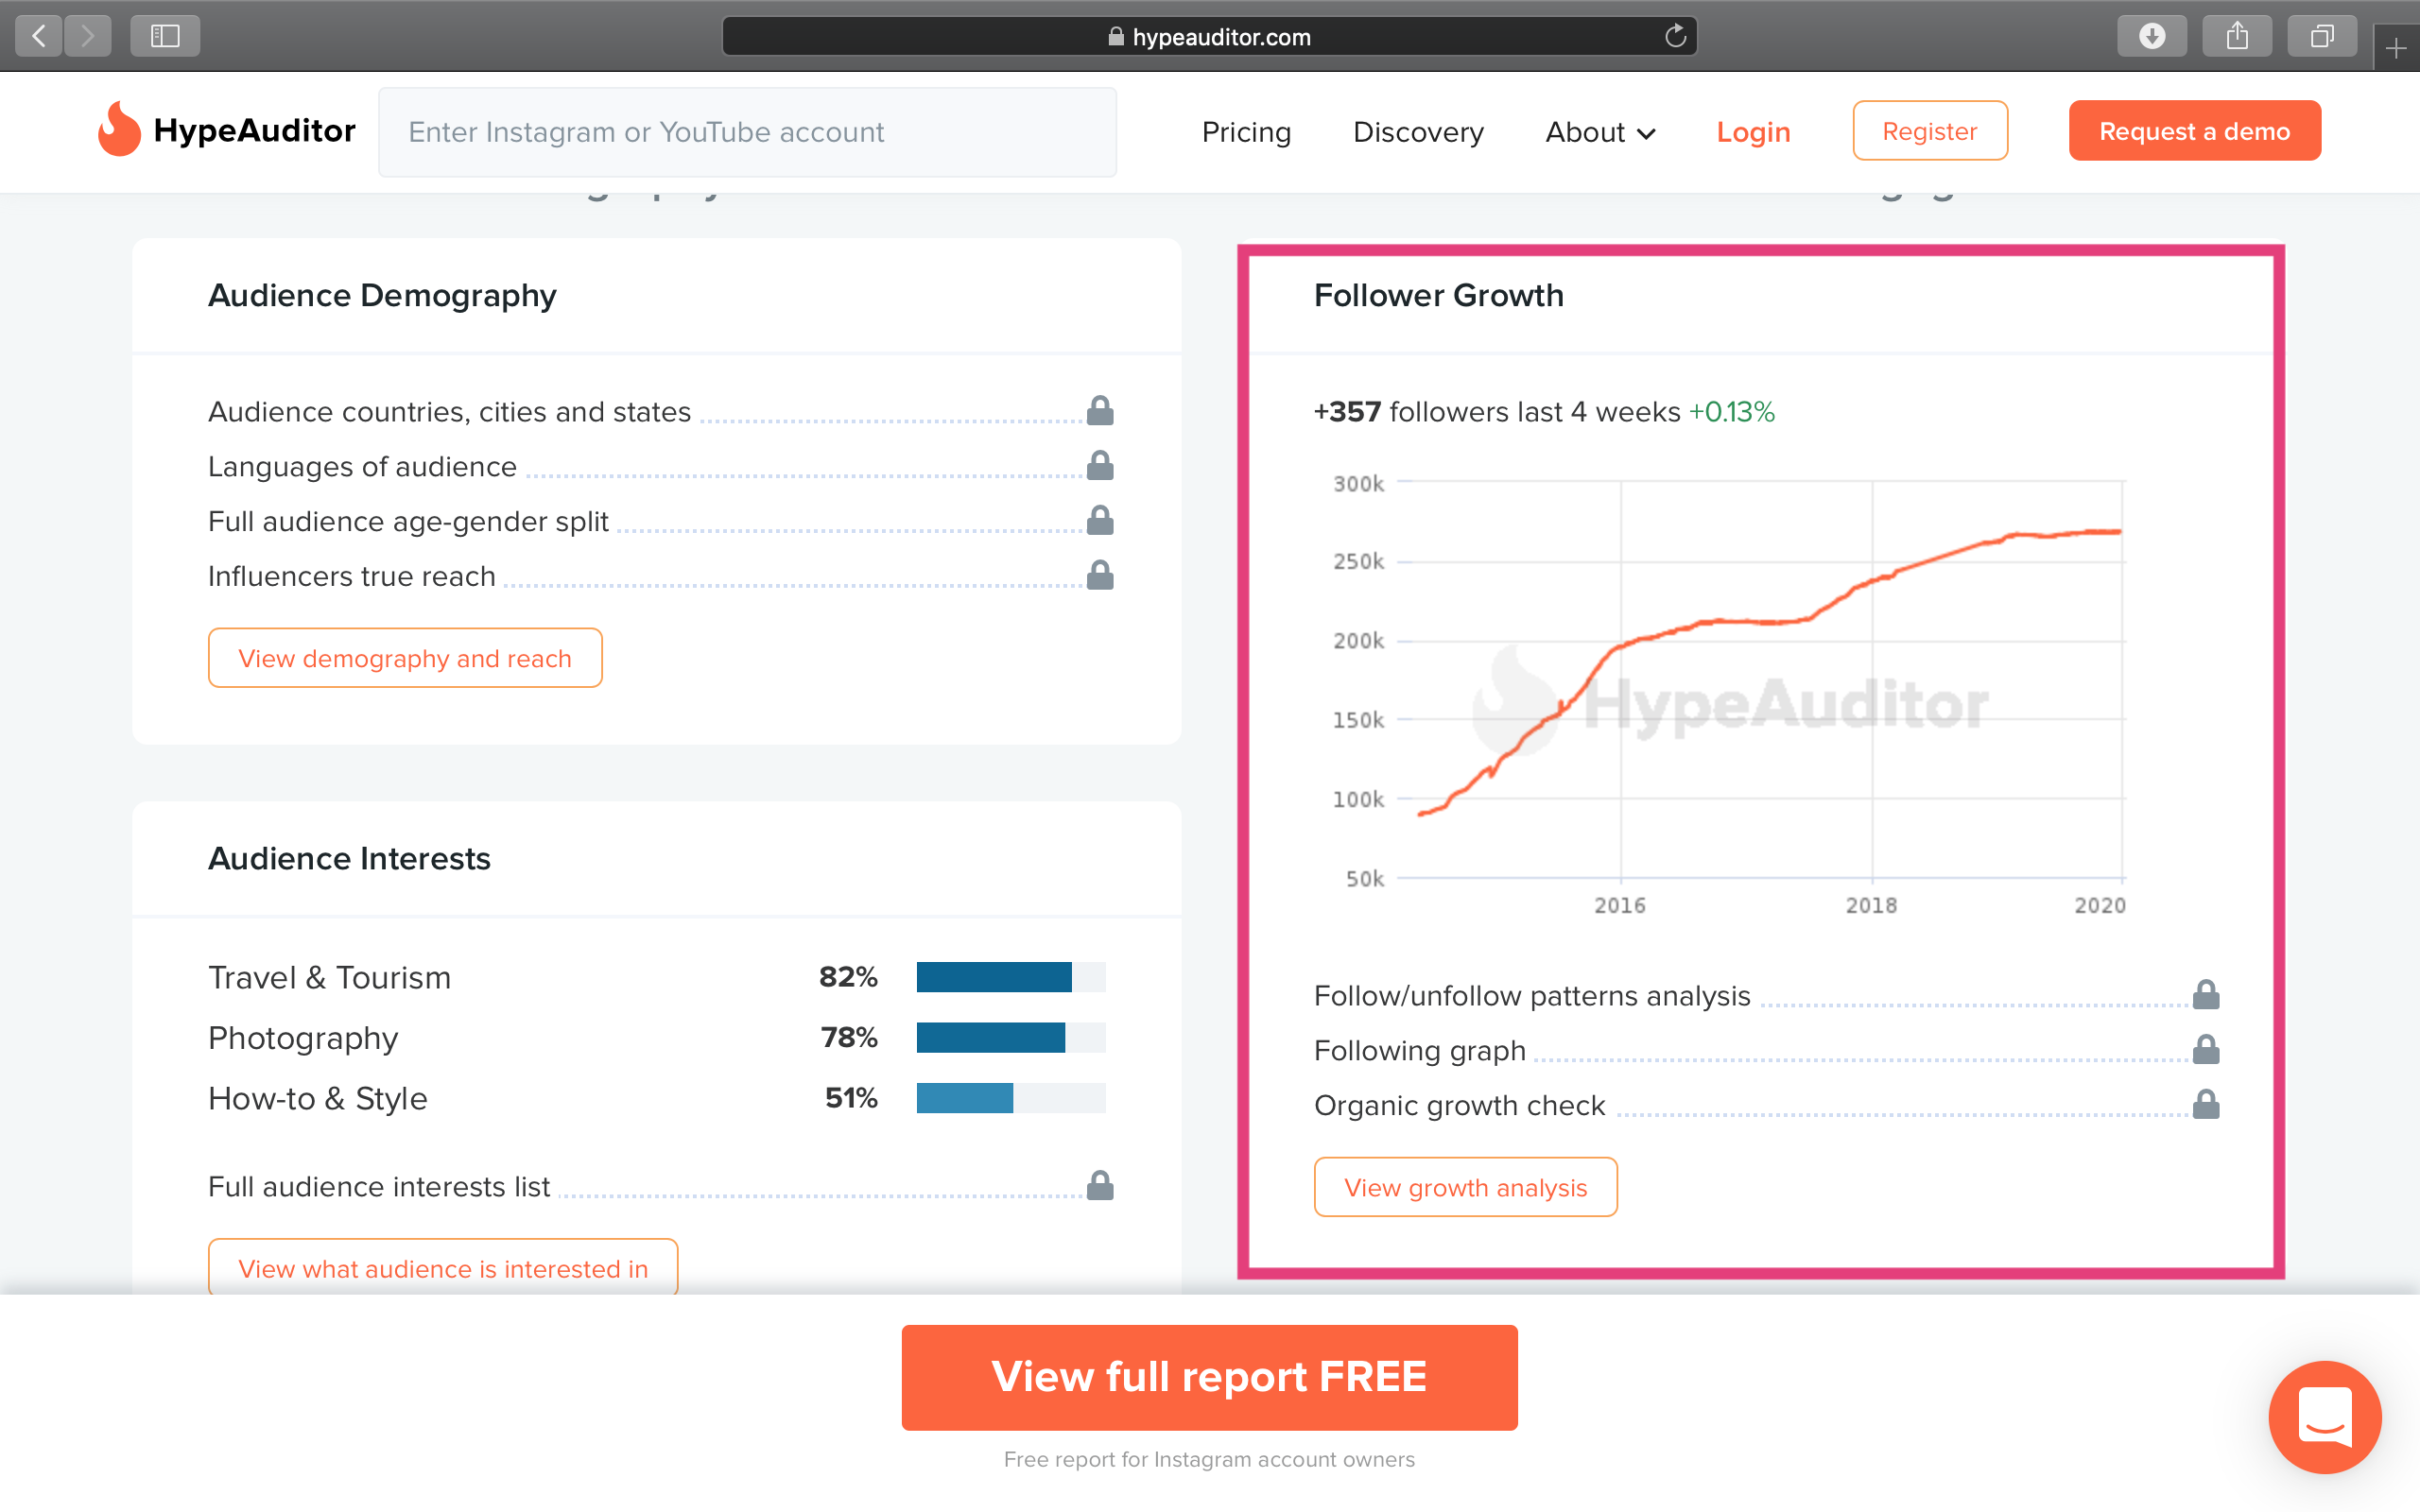 Surveiller les followers achetés sur Instagram avec HypeAuditor